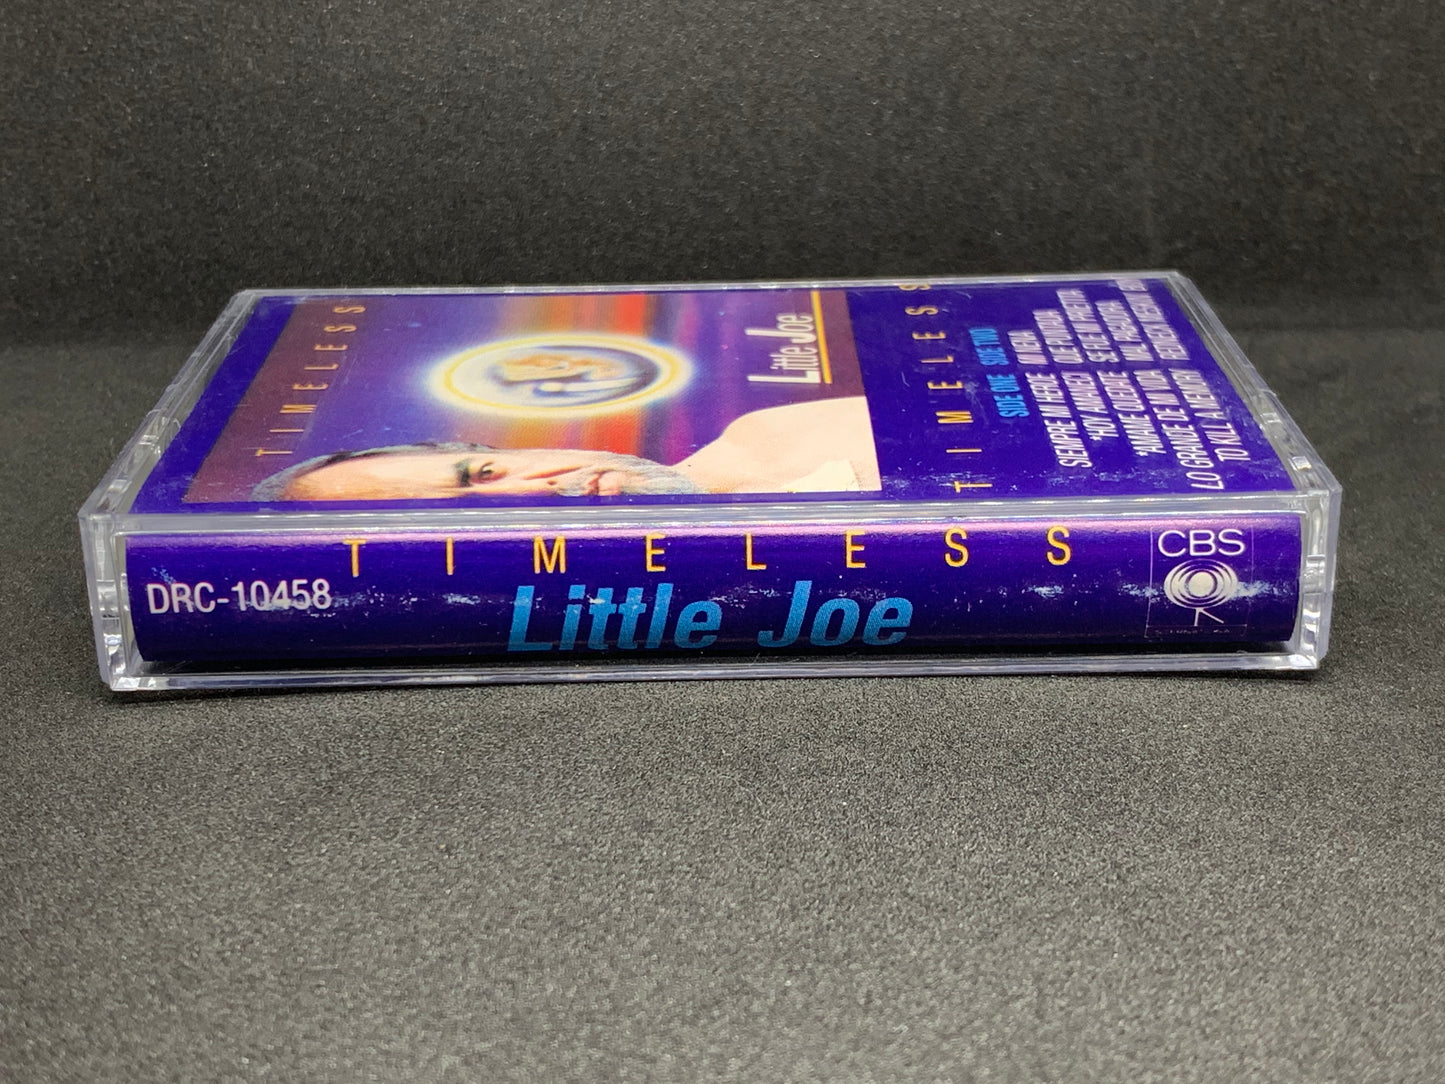 Little Joe Y La Familia - Timeless (Cassette)